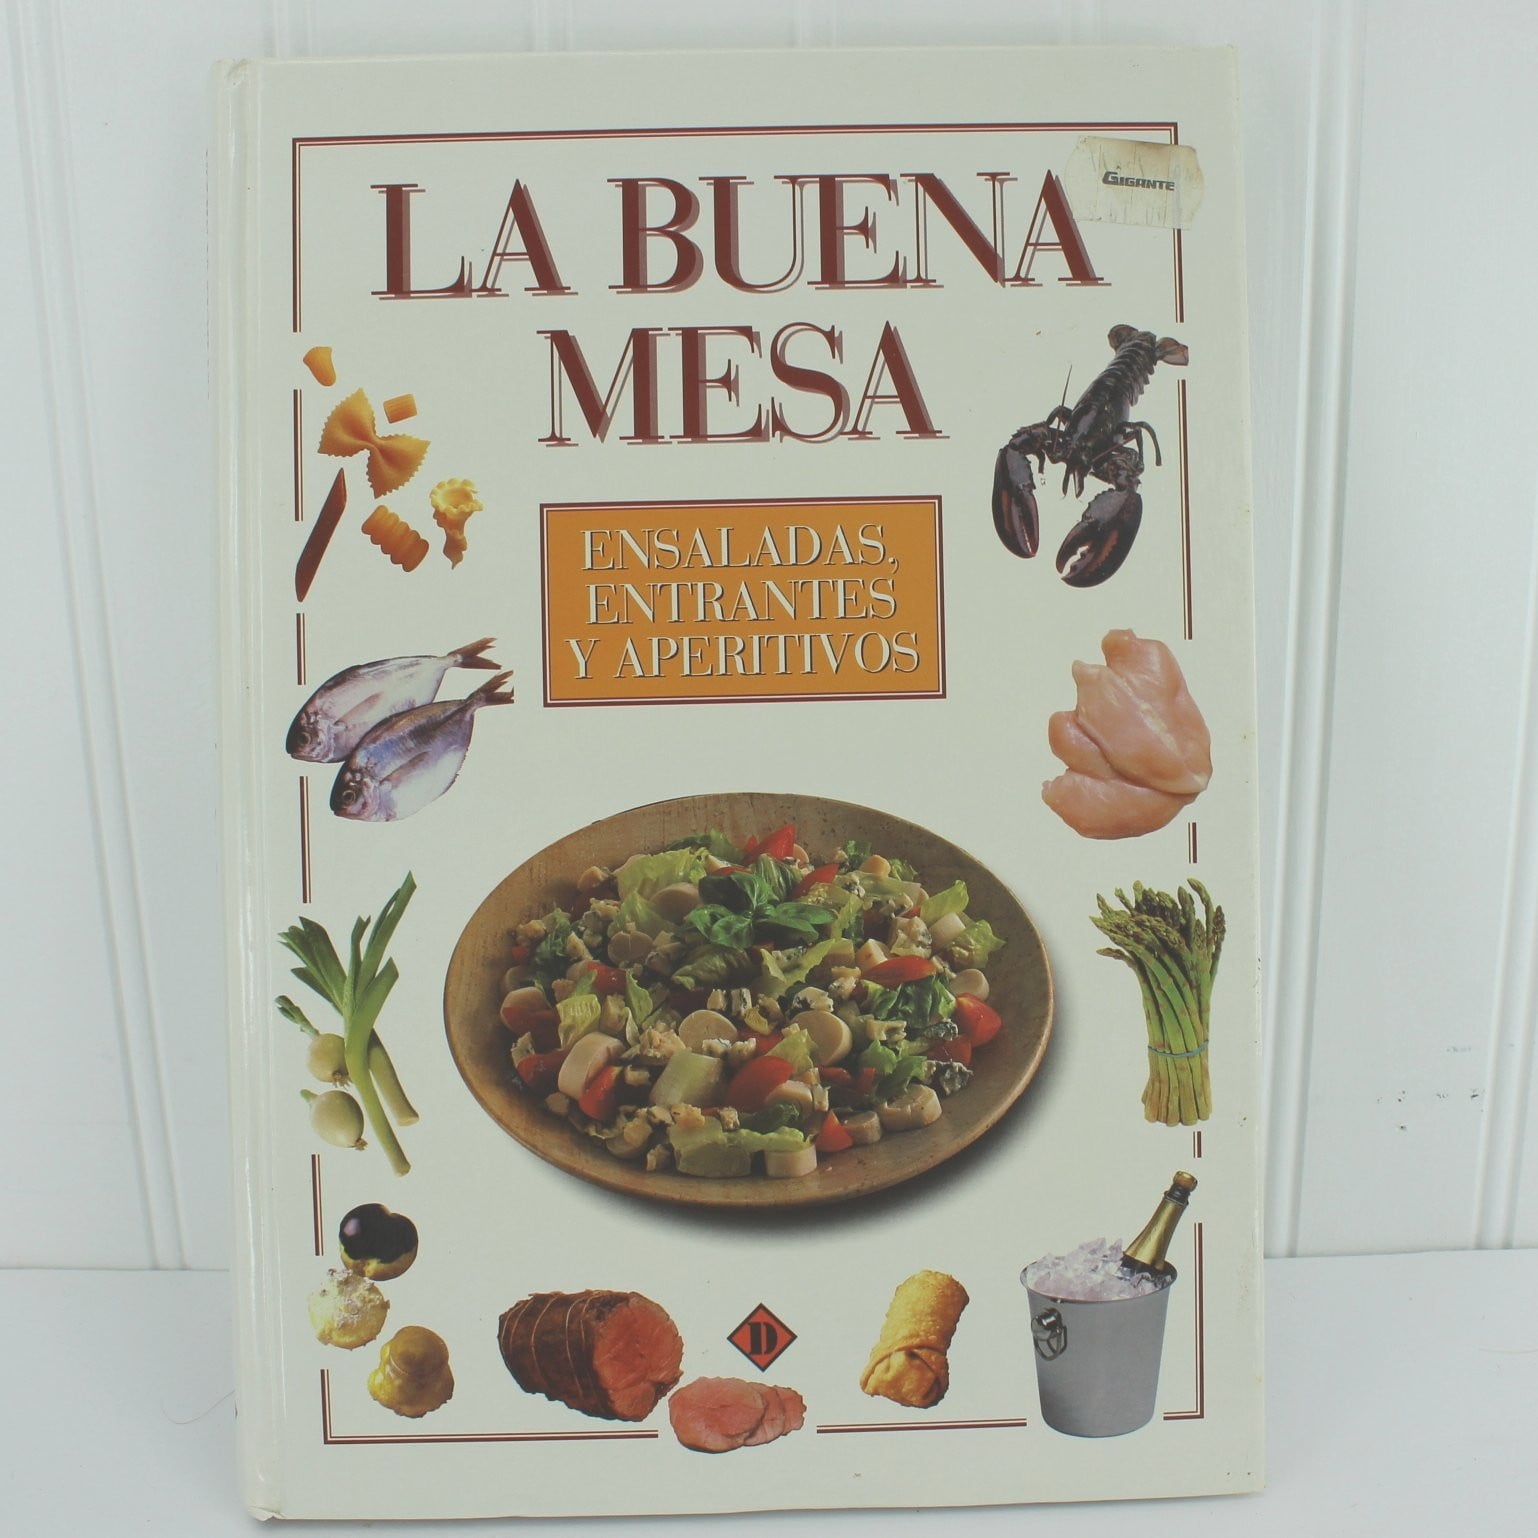 Bastin Cookbook Madrid "La Buena Mesa" Ensaladas Entrantes Aperitivos en Espanol